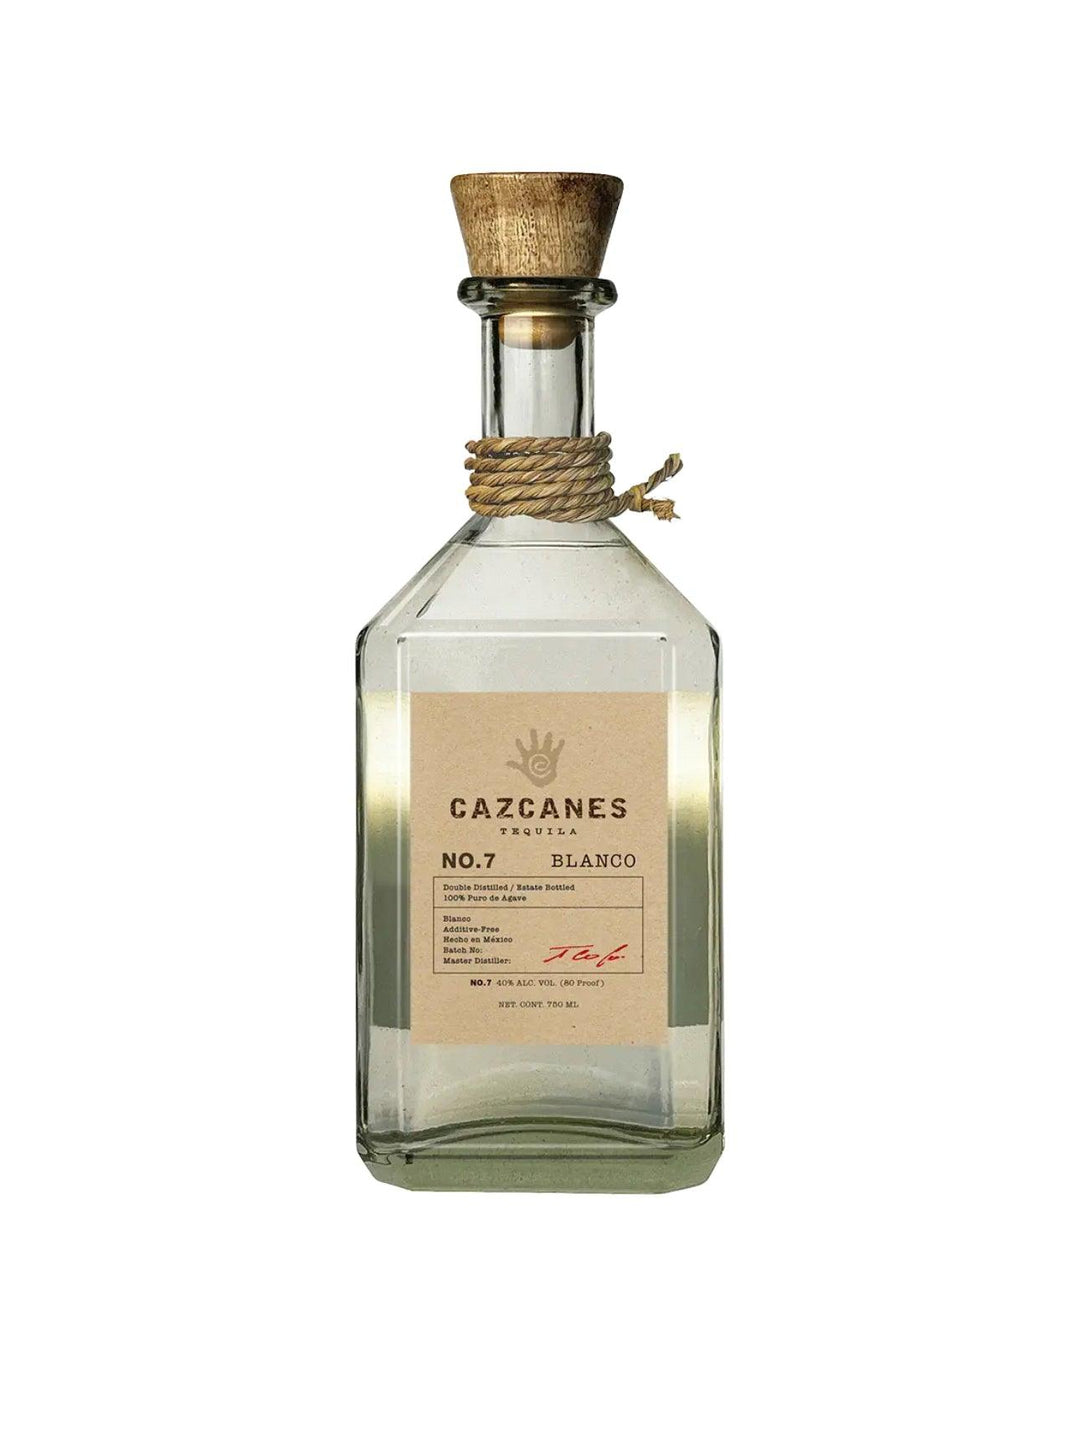 Cazcanes No. 7 Blanco Tequila - Liquor Luxe